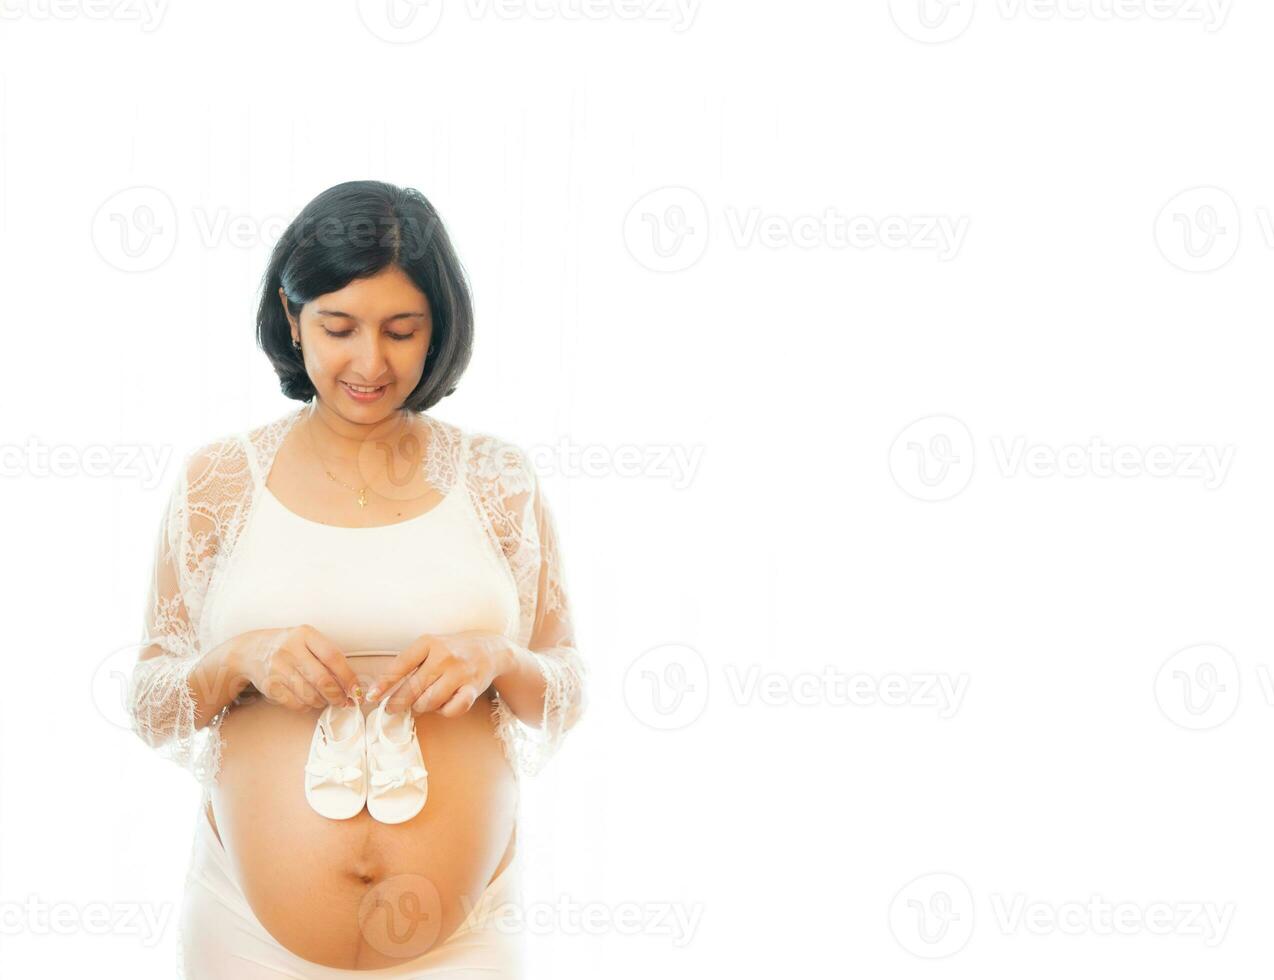 närbild gravid mage med söt mycket liten bebis skor. begrepp av graviditet, gynekologi, förberedelse. skön gravid kvinna i skjorta i vit bakgrund. kvinna innehav stor gravid mage. foto